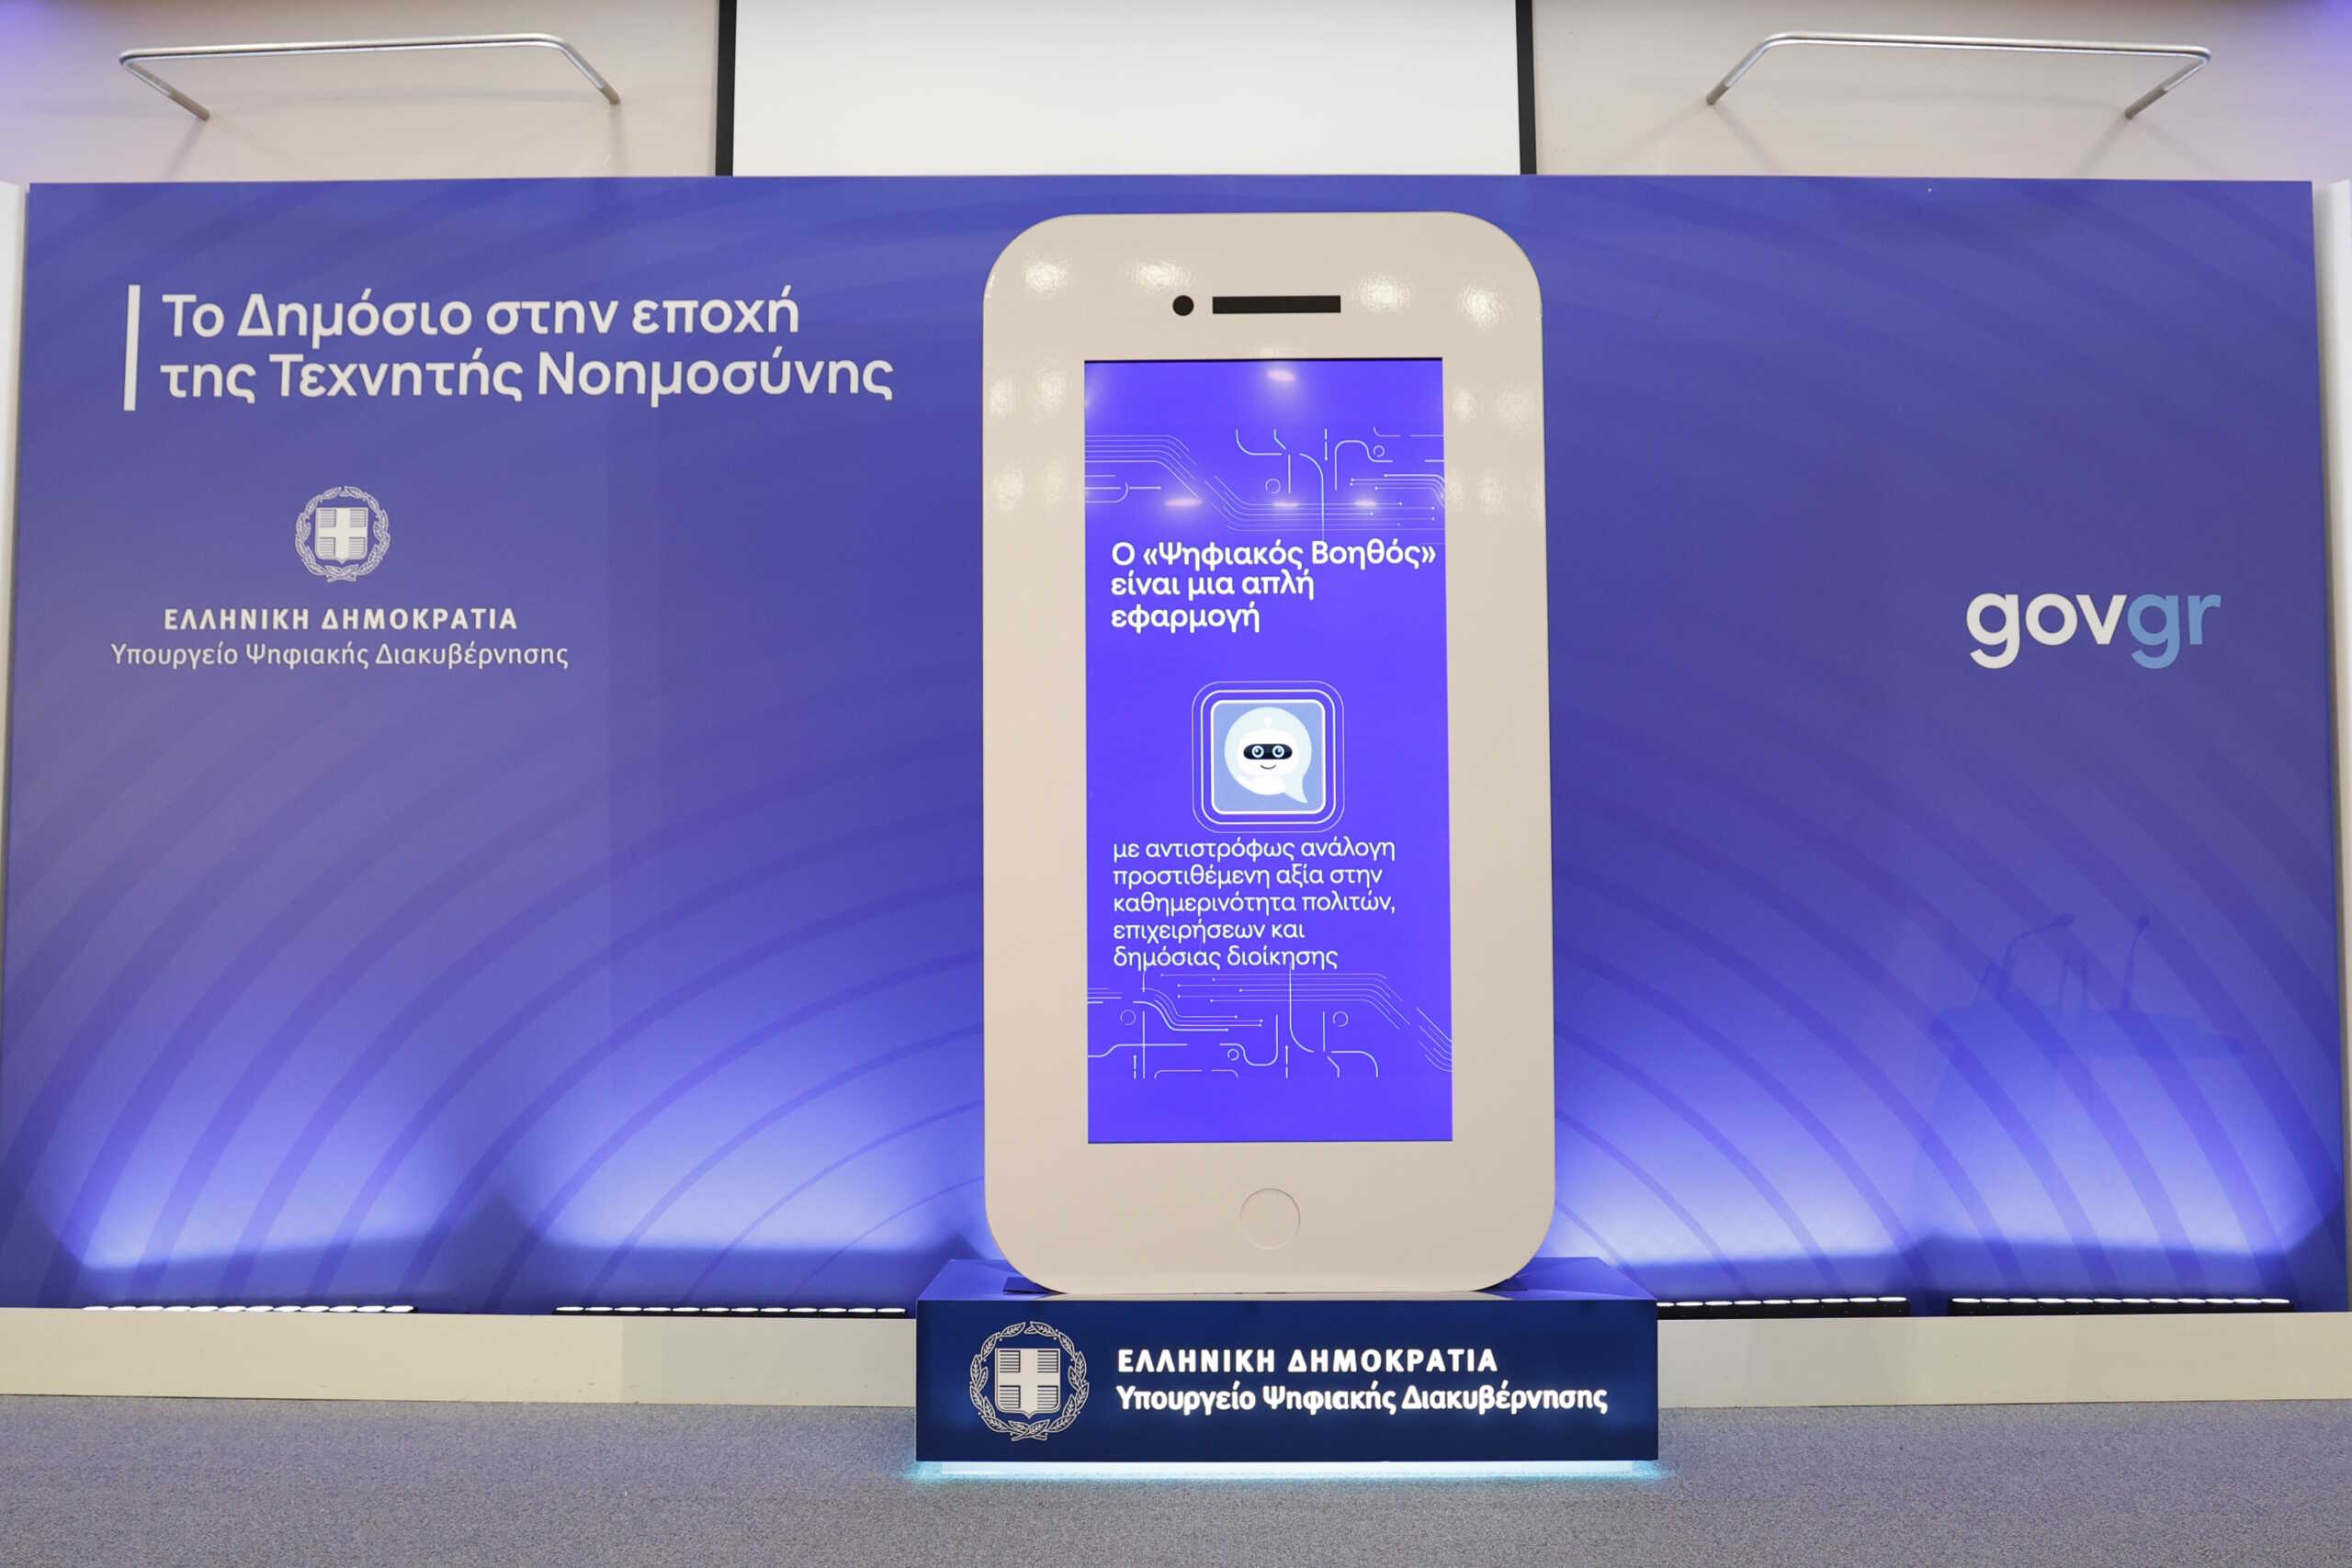 Ψηφιακός βοηθός – mAigov: Σχεδόν 4000 ερωτήσεις σε 2,5 ώρες λειτουργίας έκαναν οι πολίτες